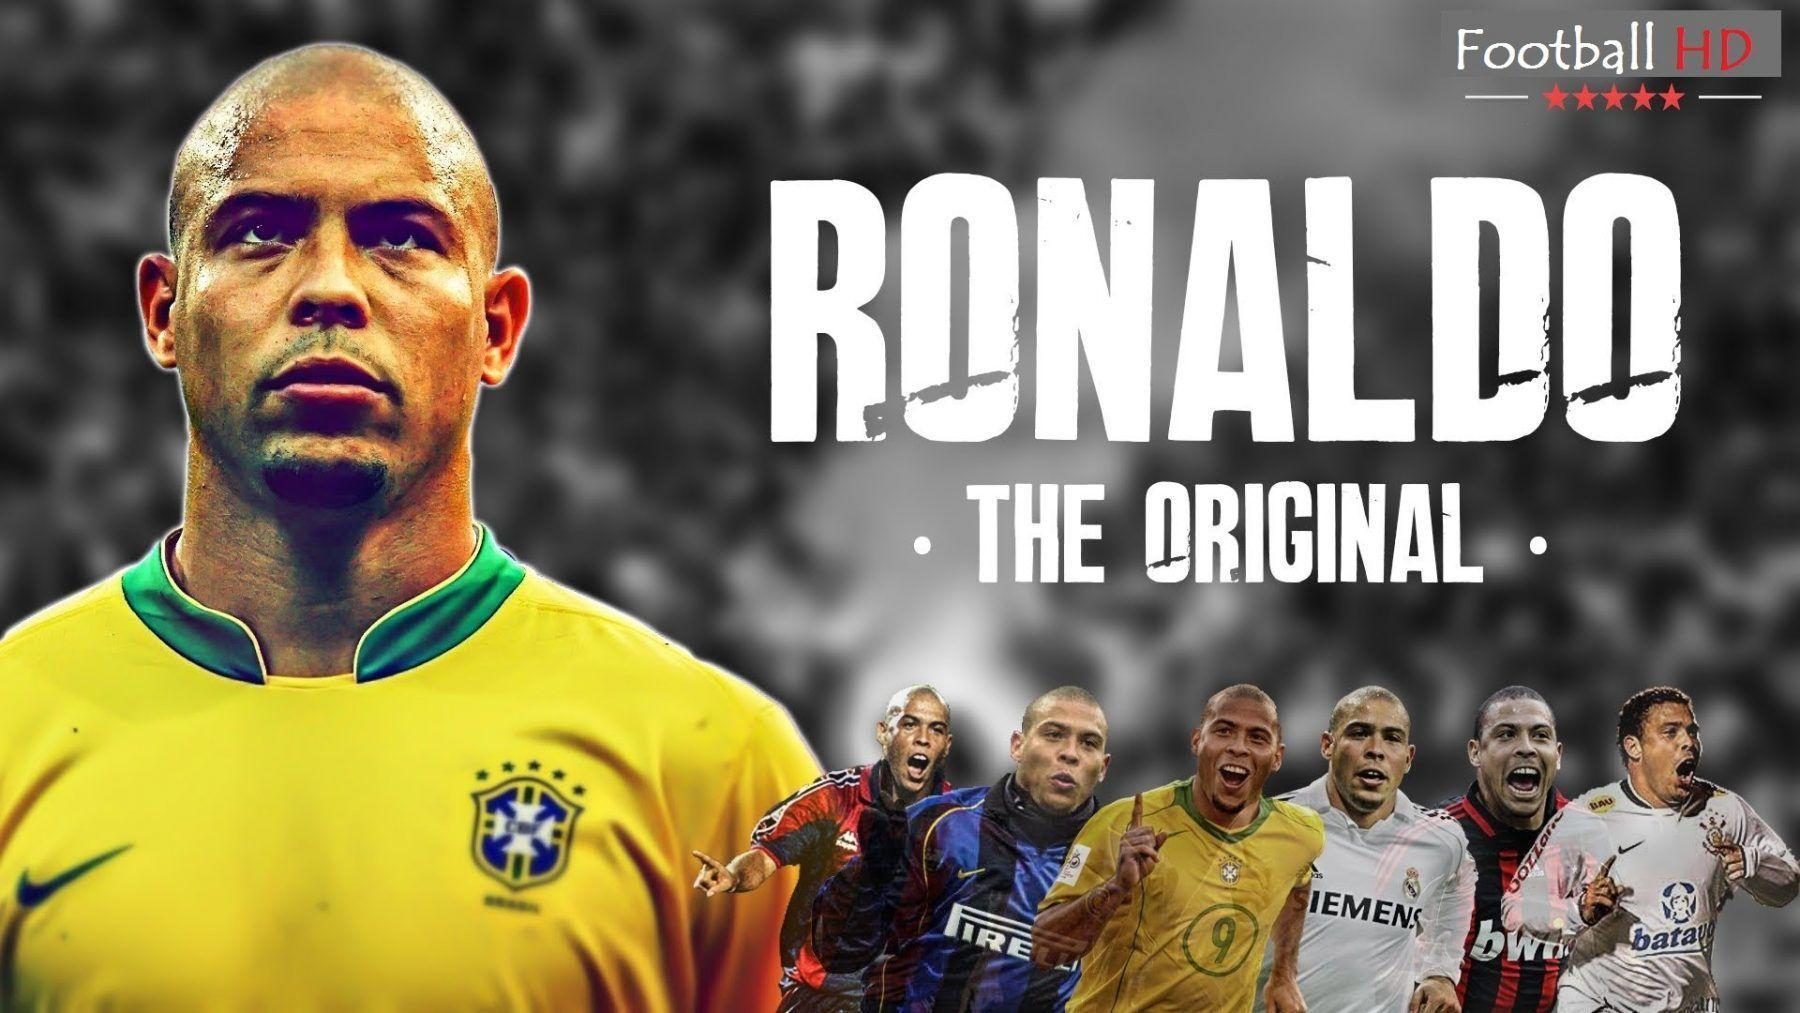 Bạn là fan của Ronaldo de Lima đúng không? Đừng bỏ lỡ những bức ảnh nền rất đẹp về anh cùng chúng tôi! Tận hưởng đam mê bóng đá và những tác phẩm nghệ thuật độc đáo chỉ có thể tìm thấy trong bộ sưu tập hình nền về Ronaldo de Lima tuyệt đẹp này.